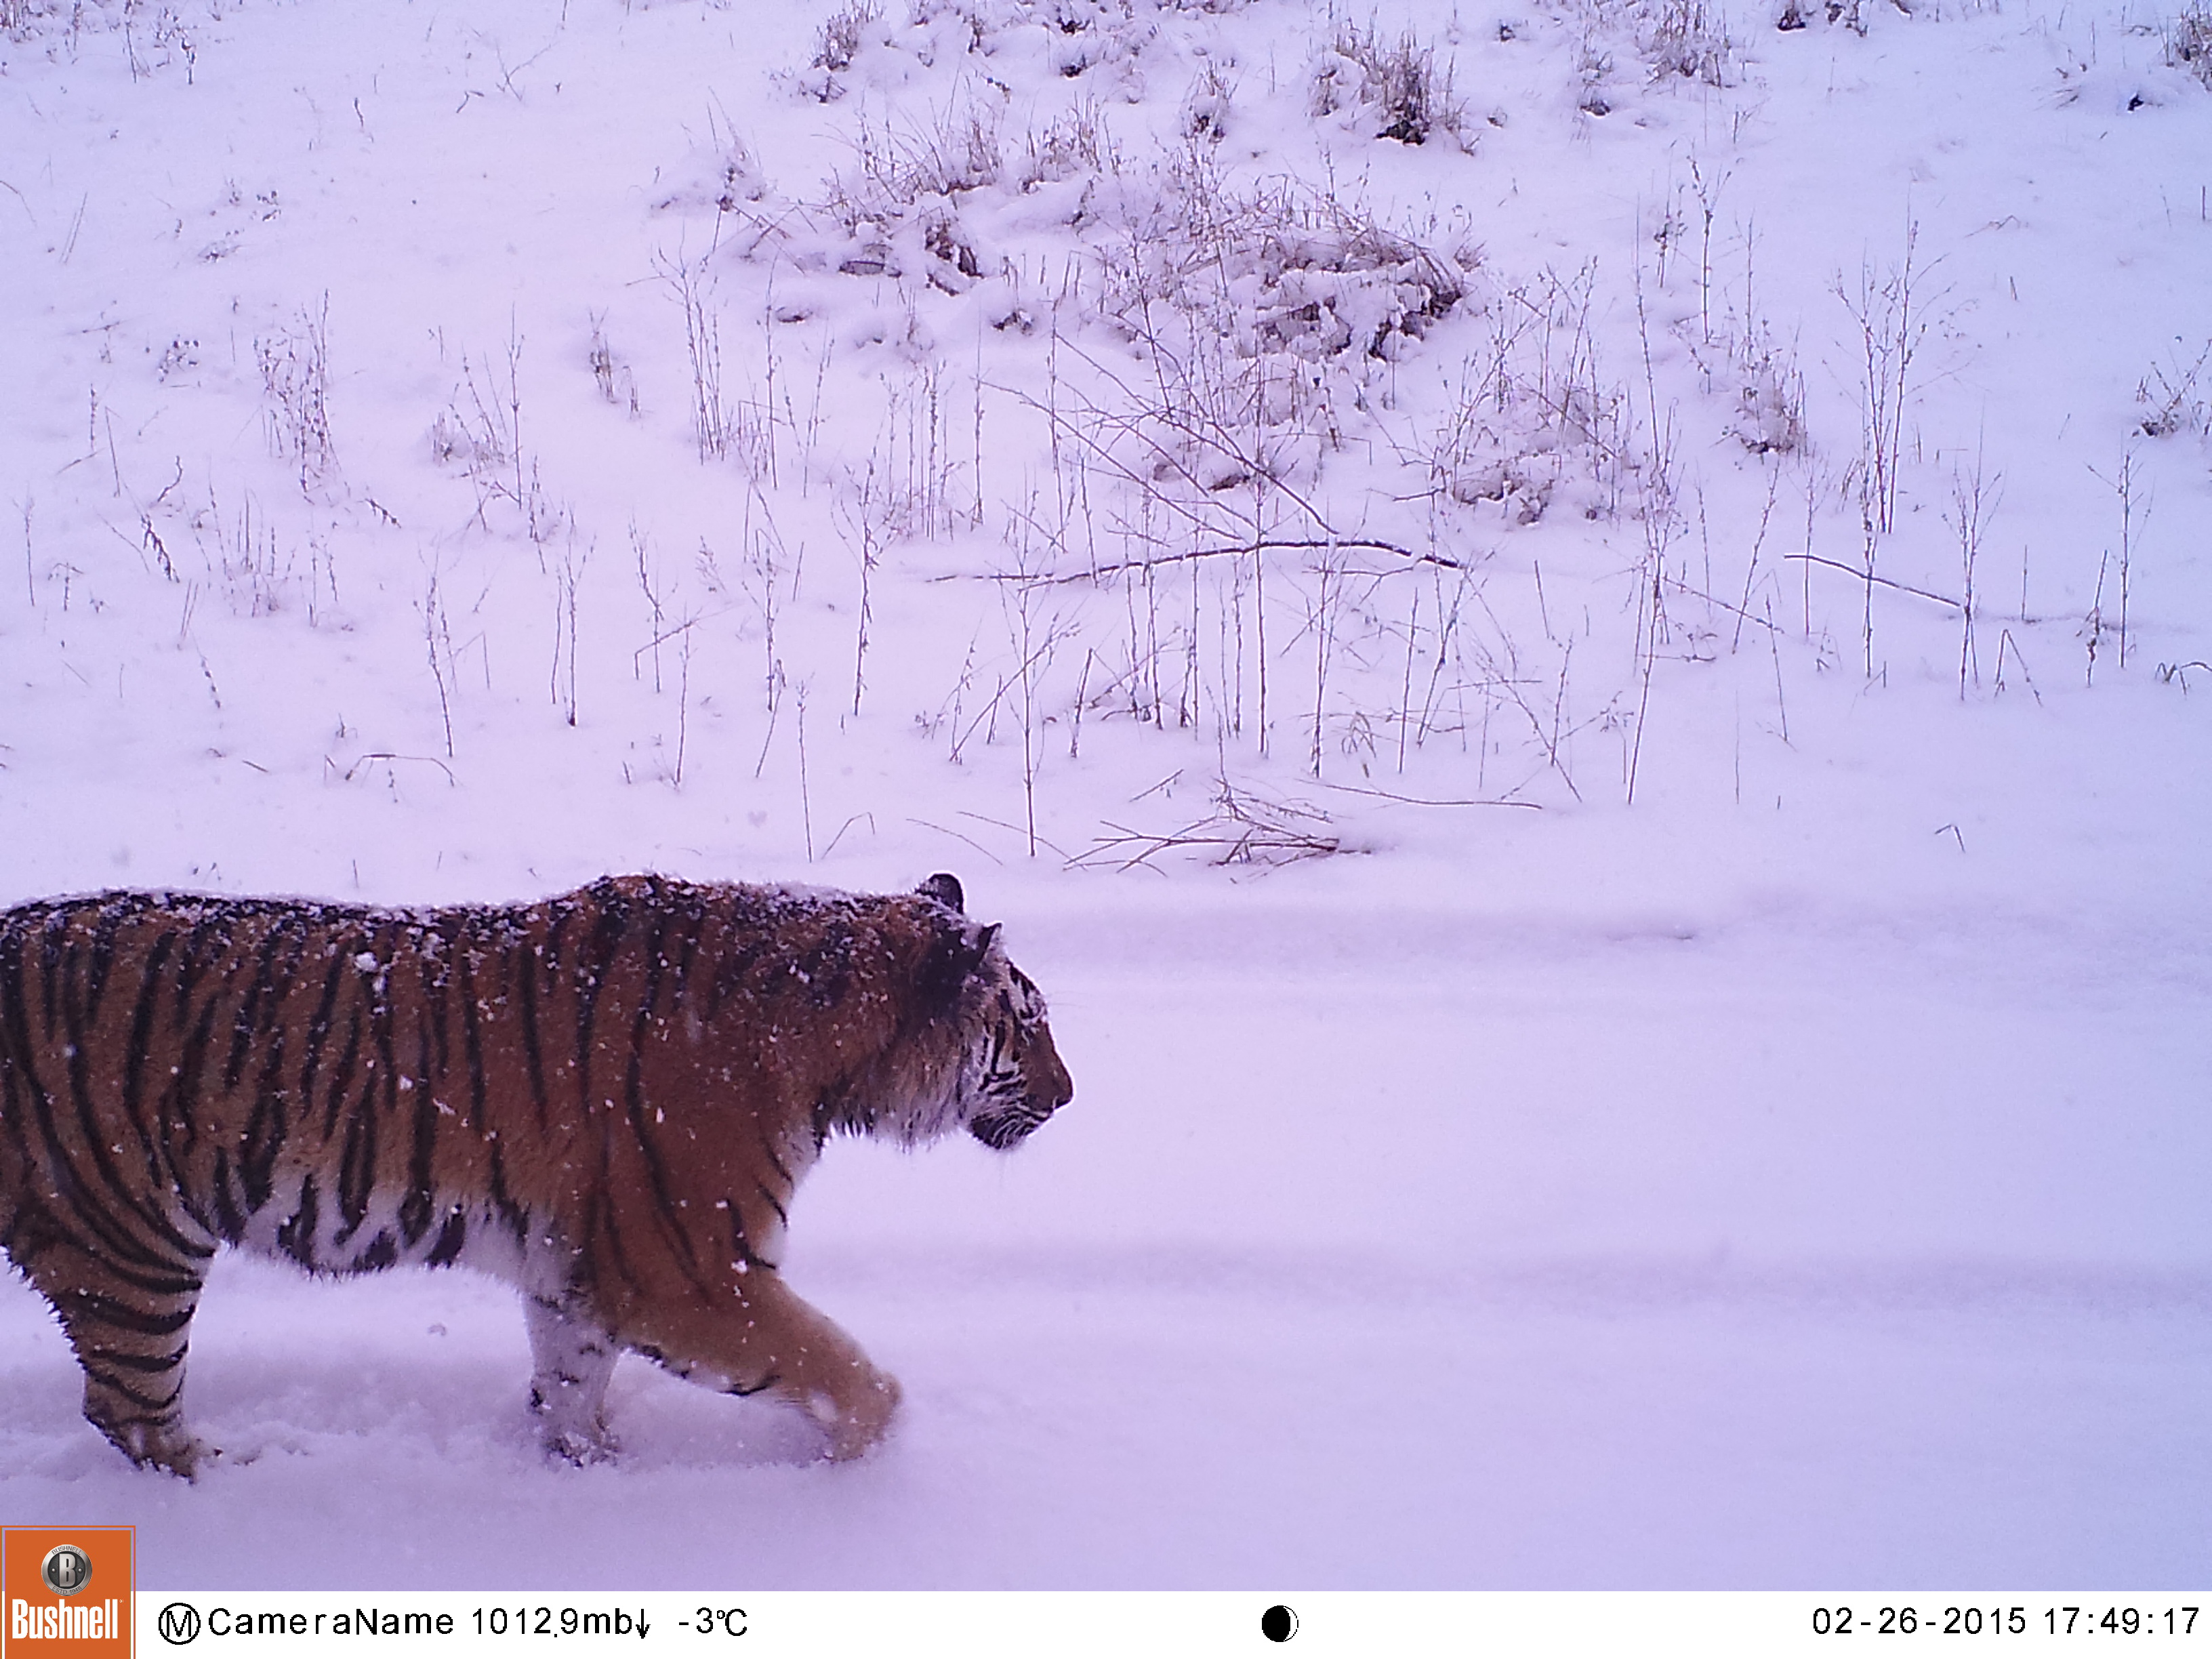 Ведущие эксперты обсудили пути сохранения амурского тигра